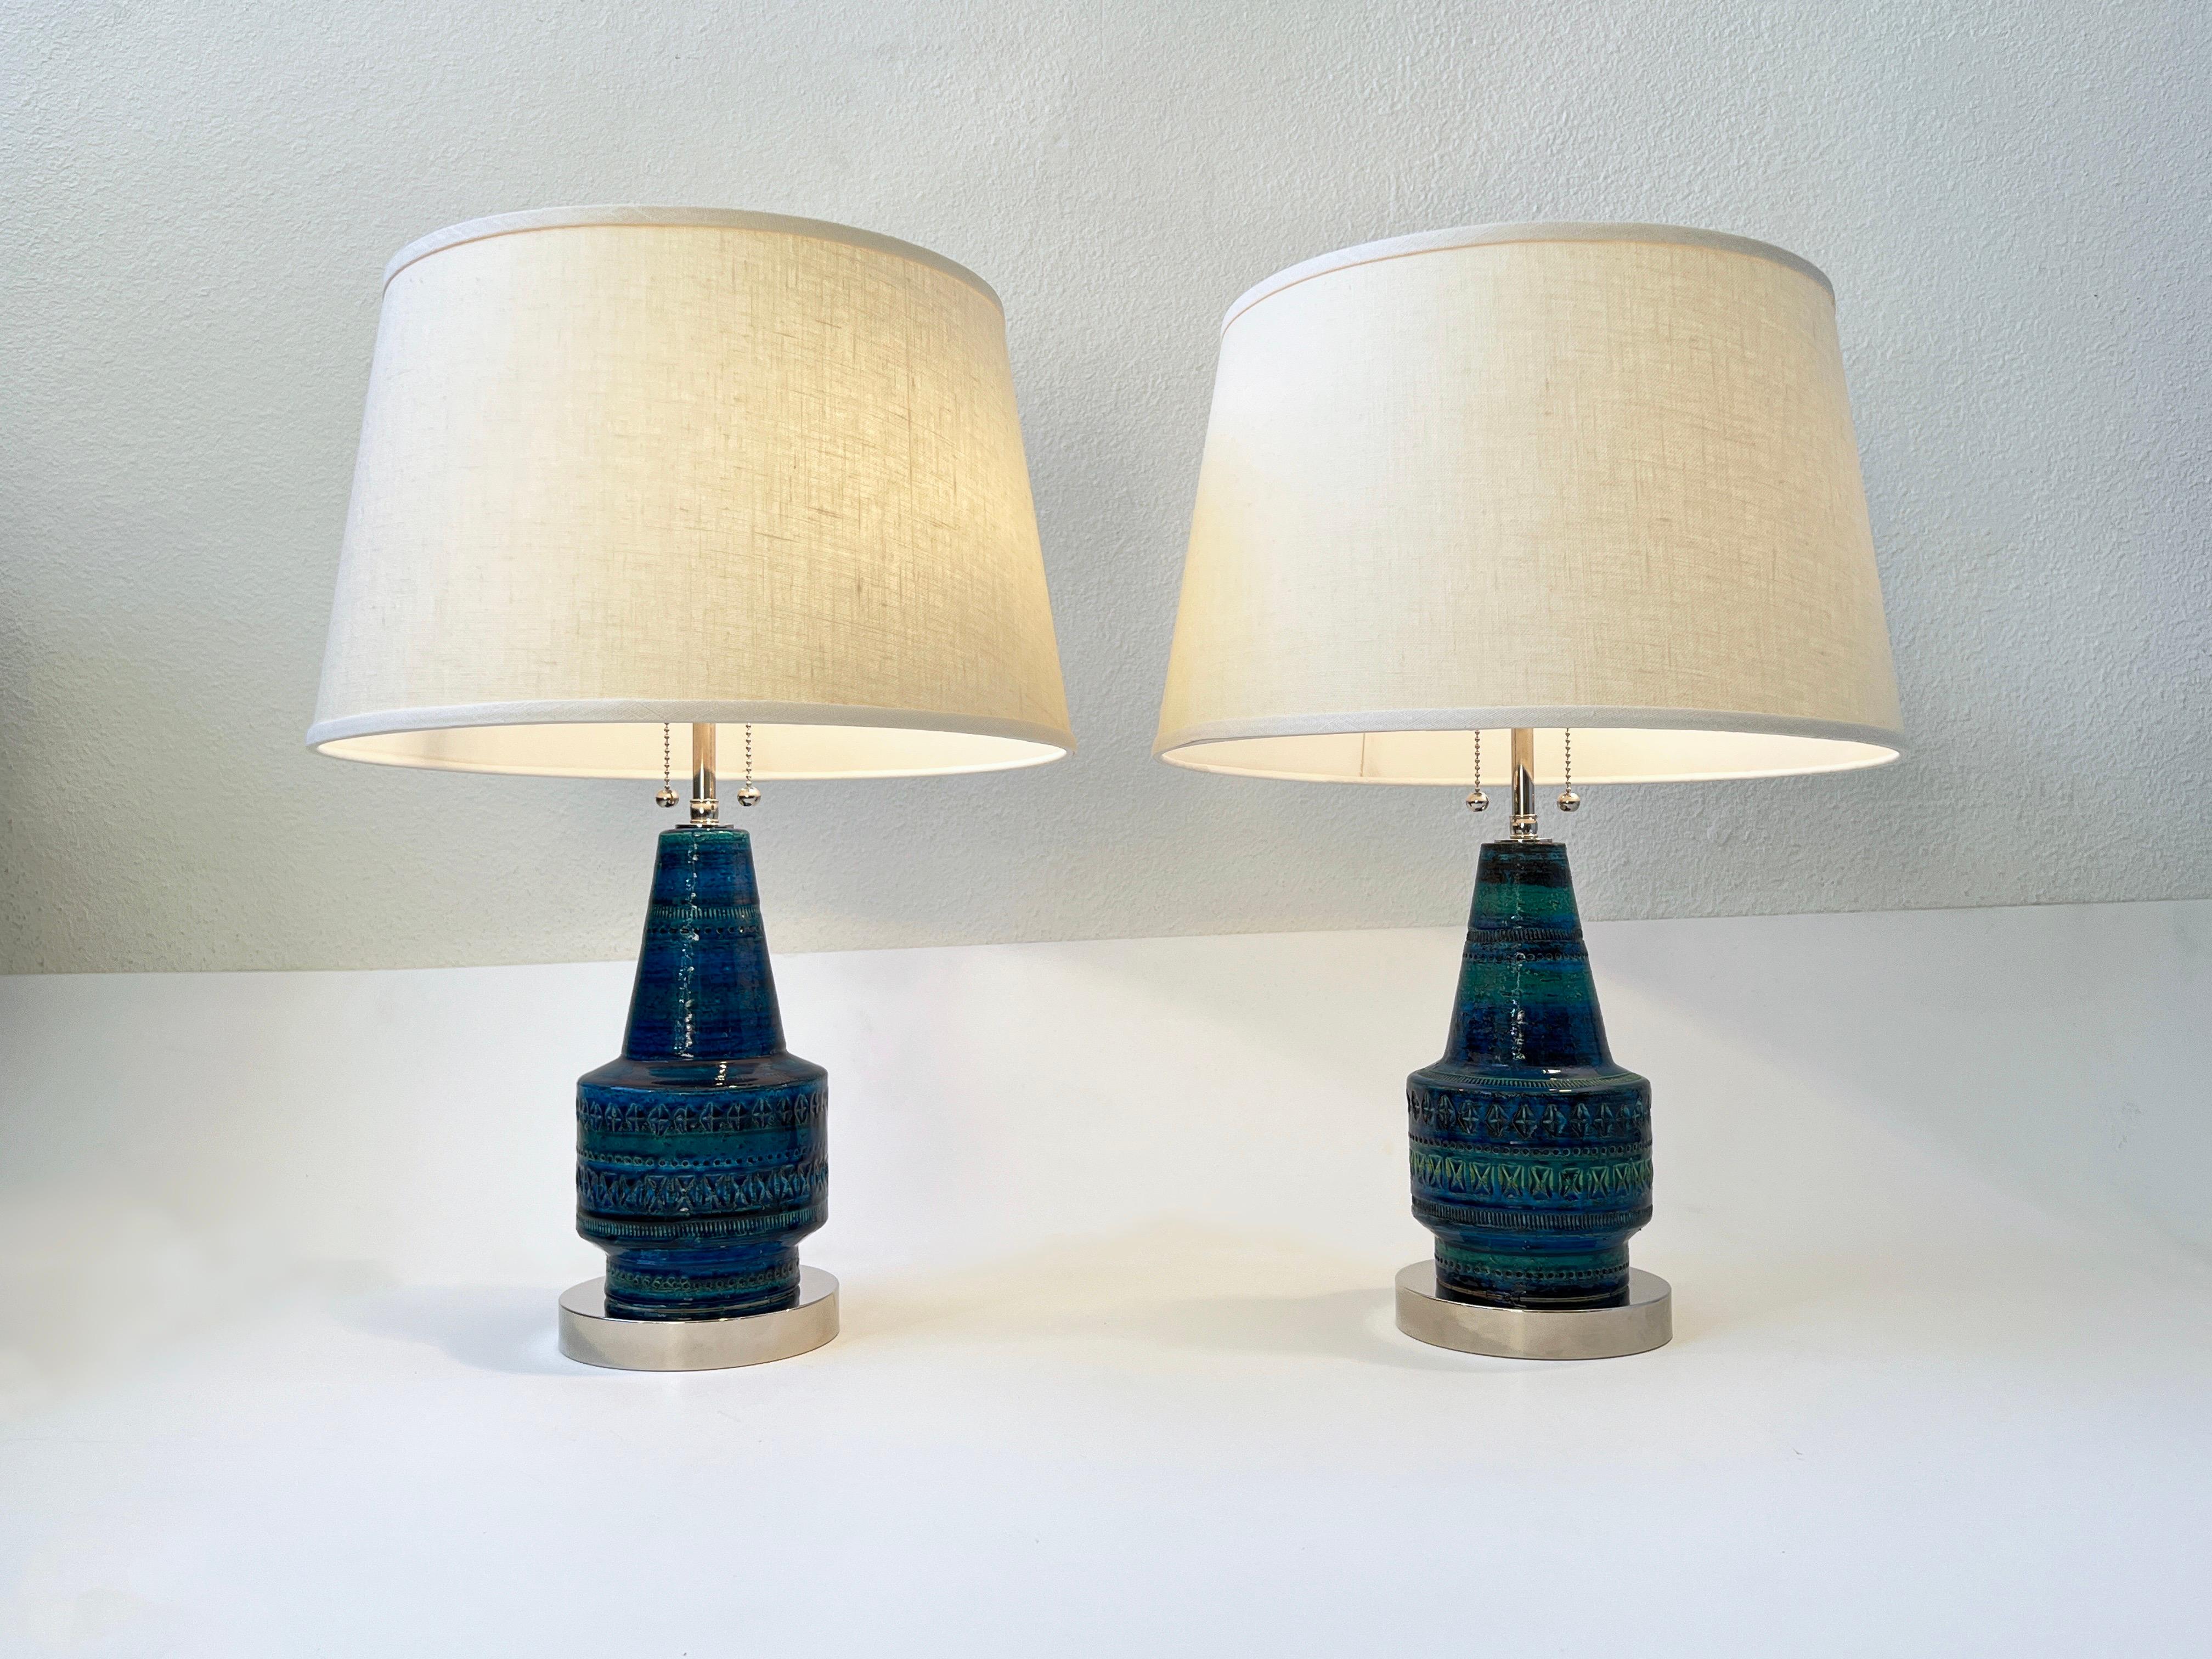 Paire de lampes italiennes en céramique 'Rimini Blue' conçues dans les années 1960 par Aldo Londi pour Bitossi.
L'installation électrique a été refaite à neuf avec une nouvelle quincaillerie chromée et de nouveaux abat-jours en lin vanille.
Chaque